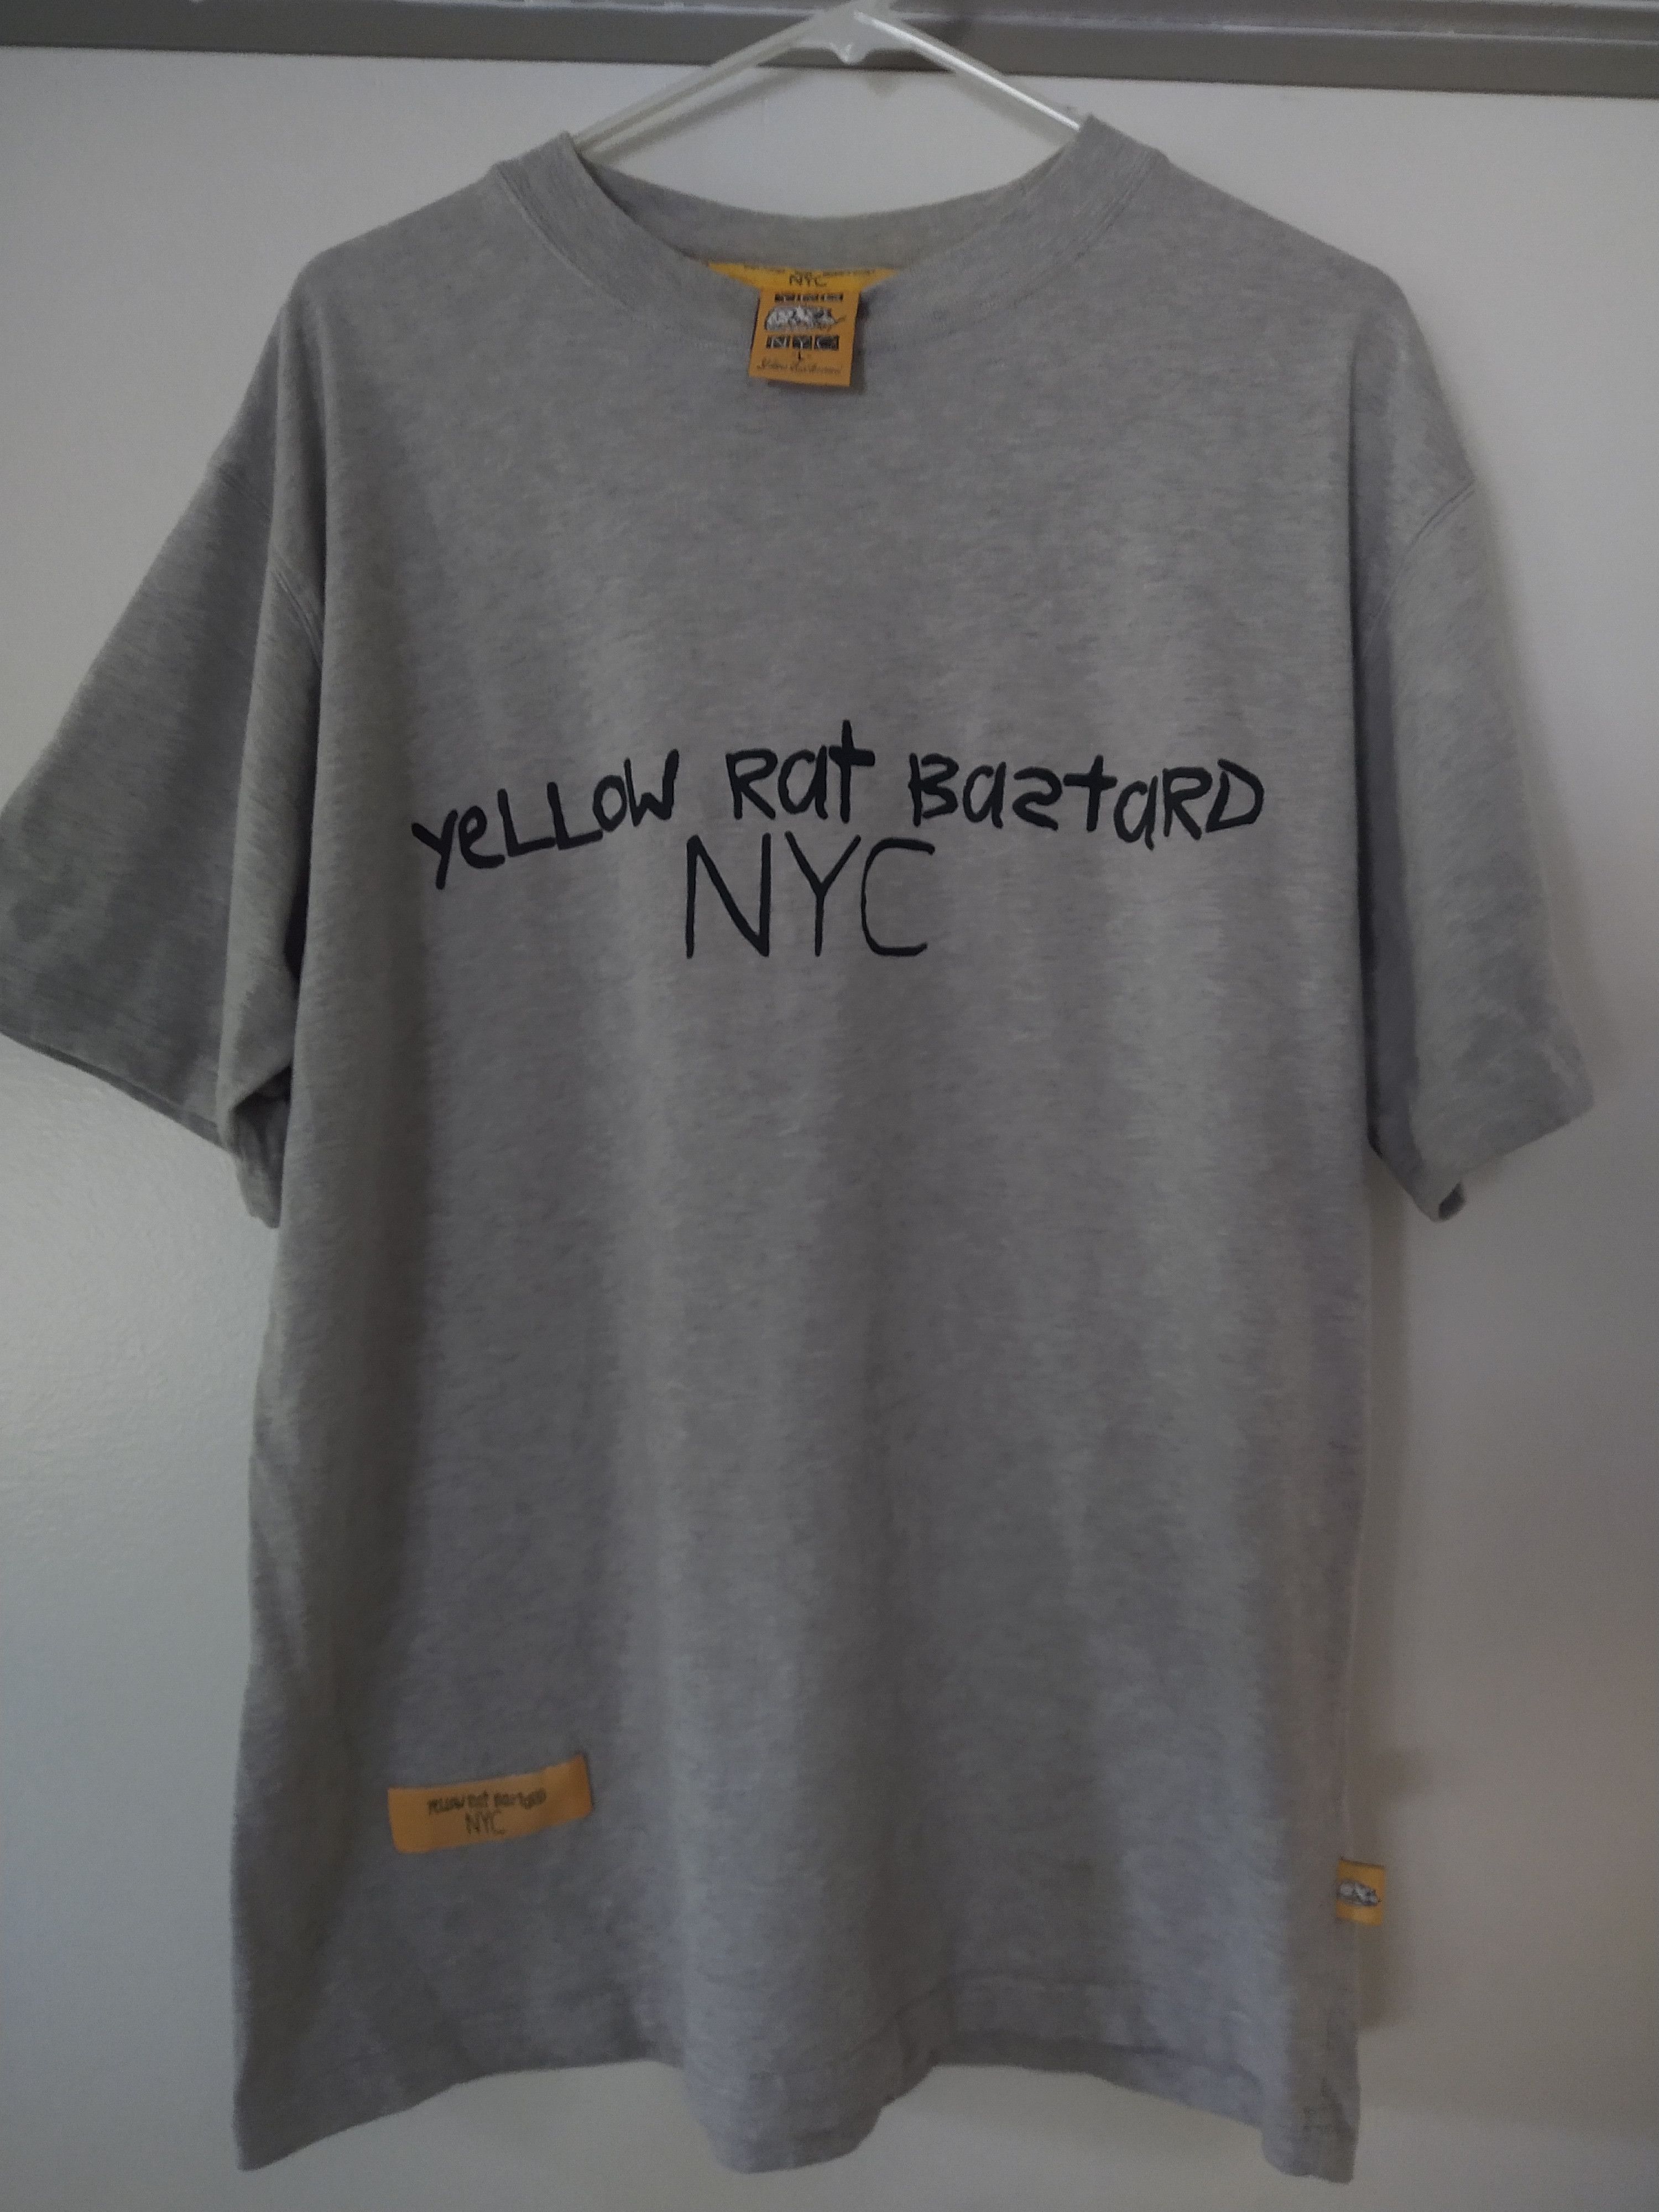 New York Gothic T-Shirt – Yellow Rat Bastard